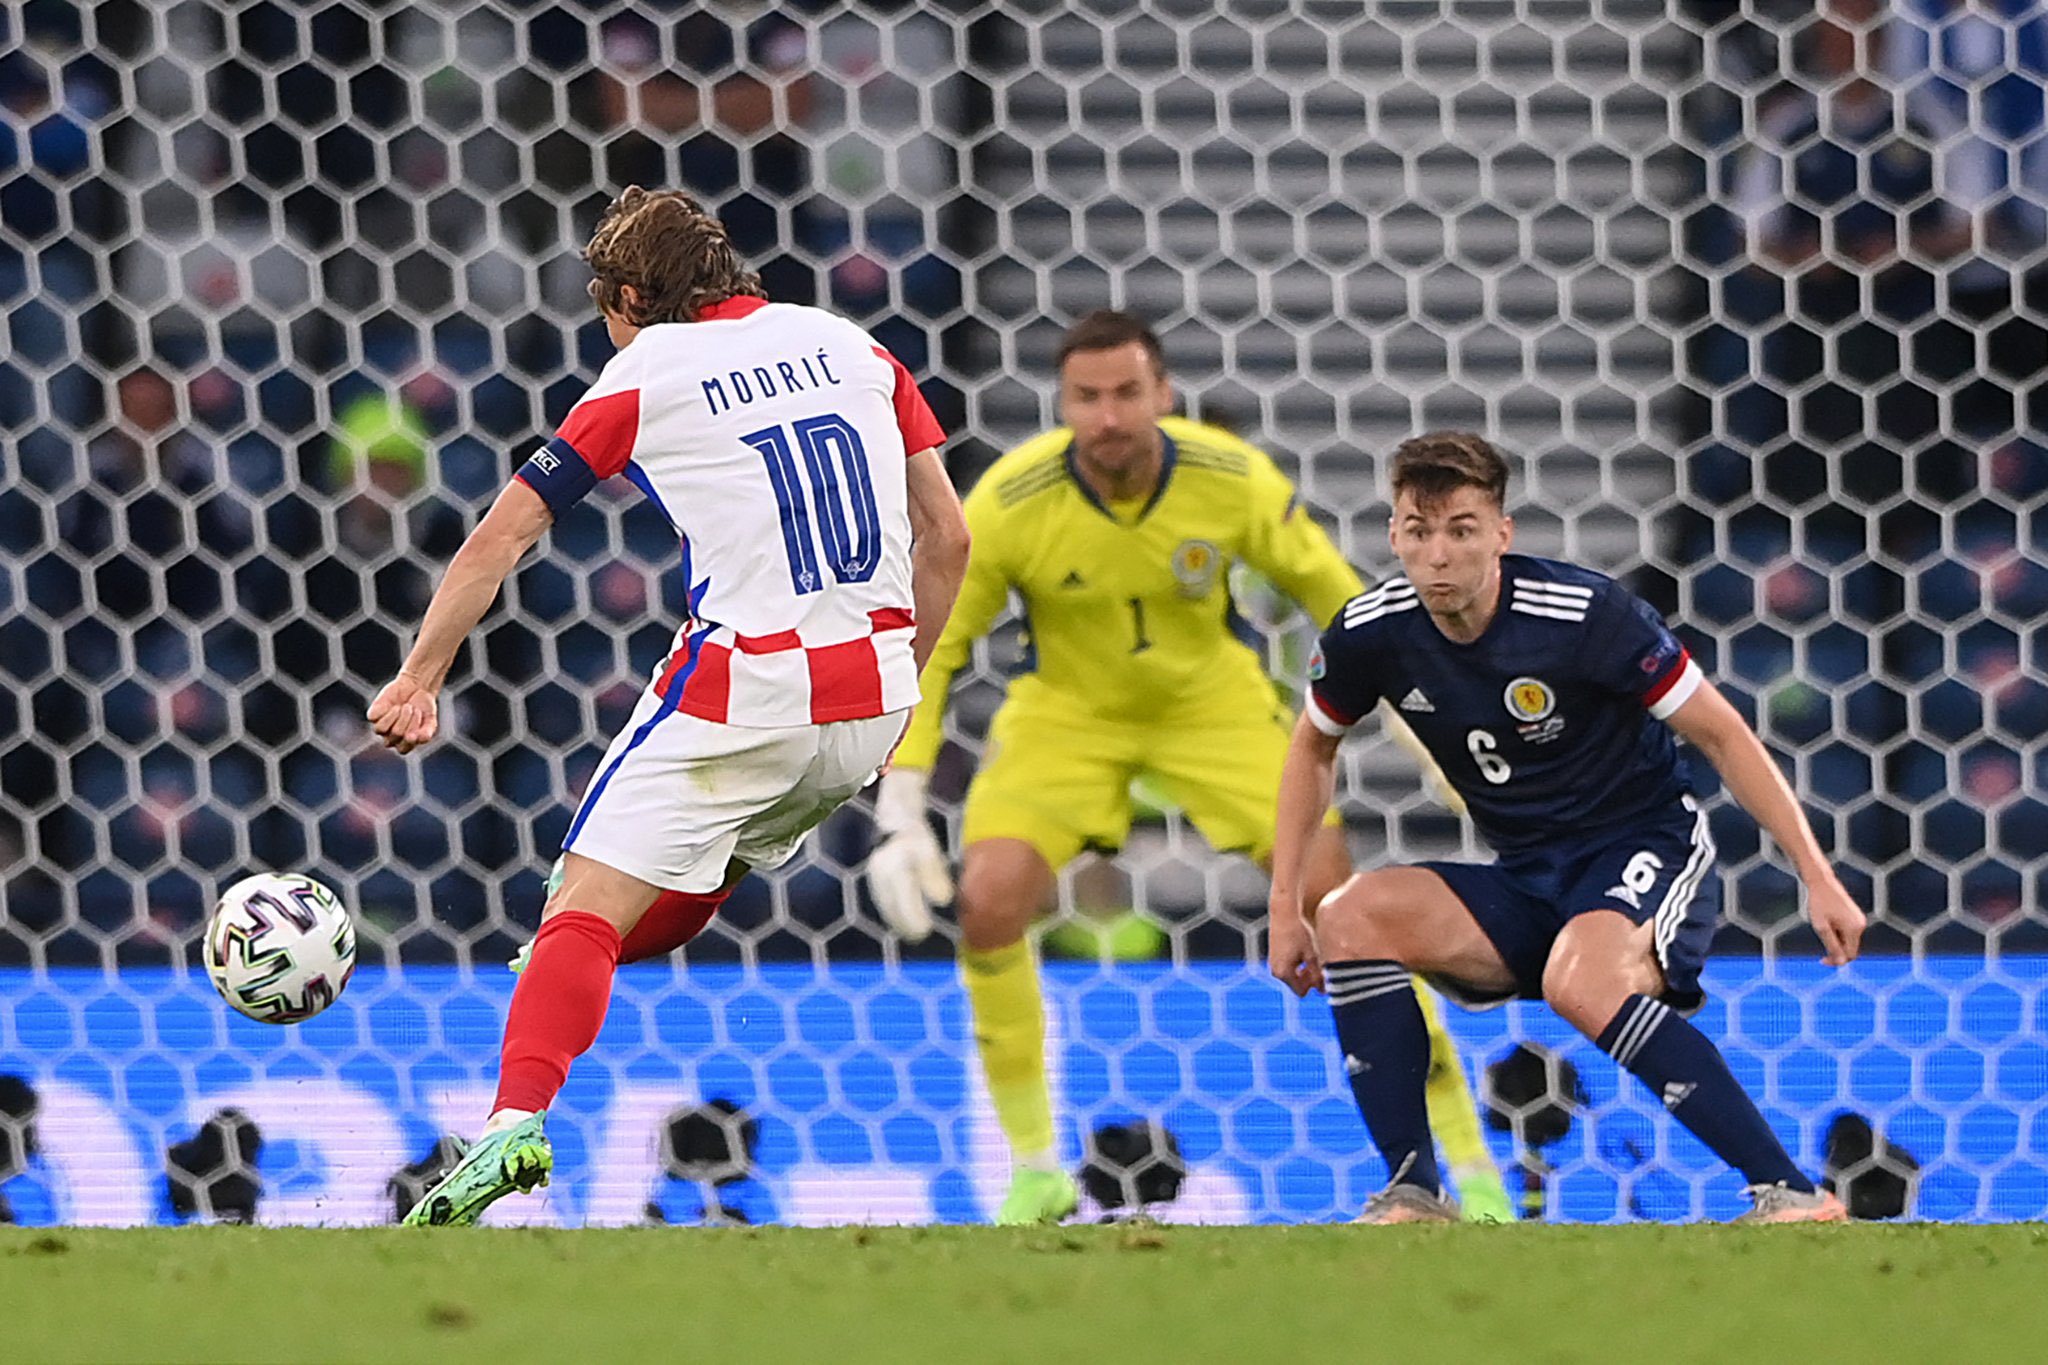 El golazo de Modric sirvió para romper el 1-1 e inclinar el resultado para Croacia.